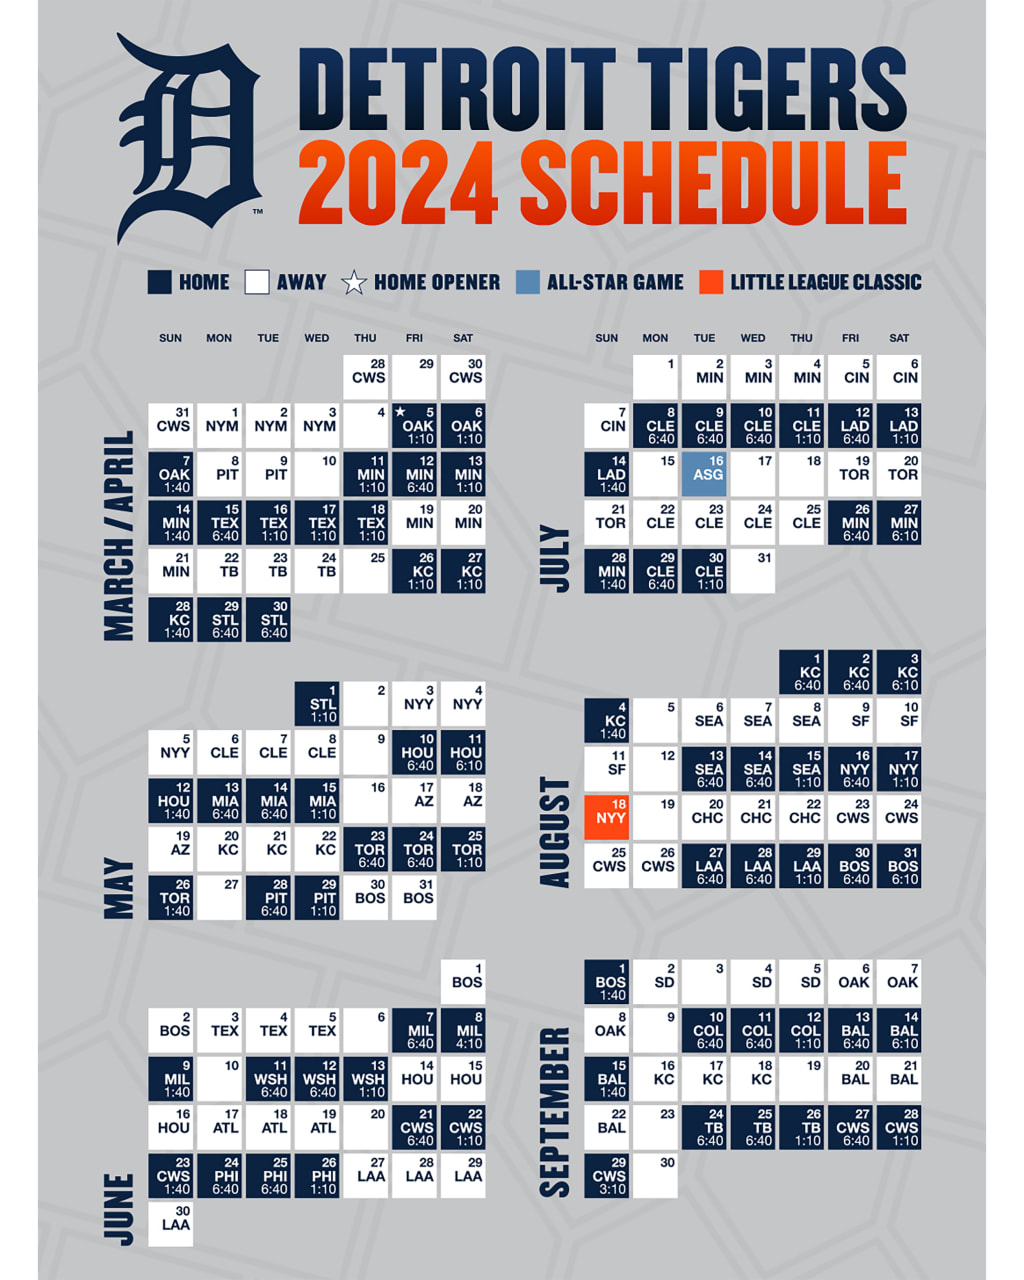 Tigers FANS - 1/12/21- Detroit Tigers 2021 Schedule